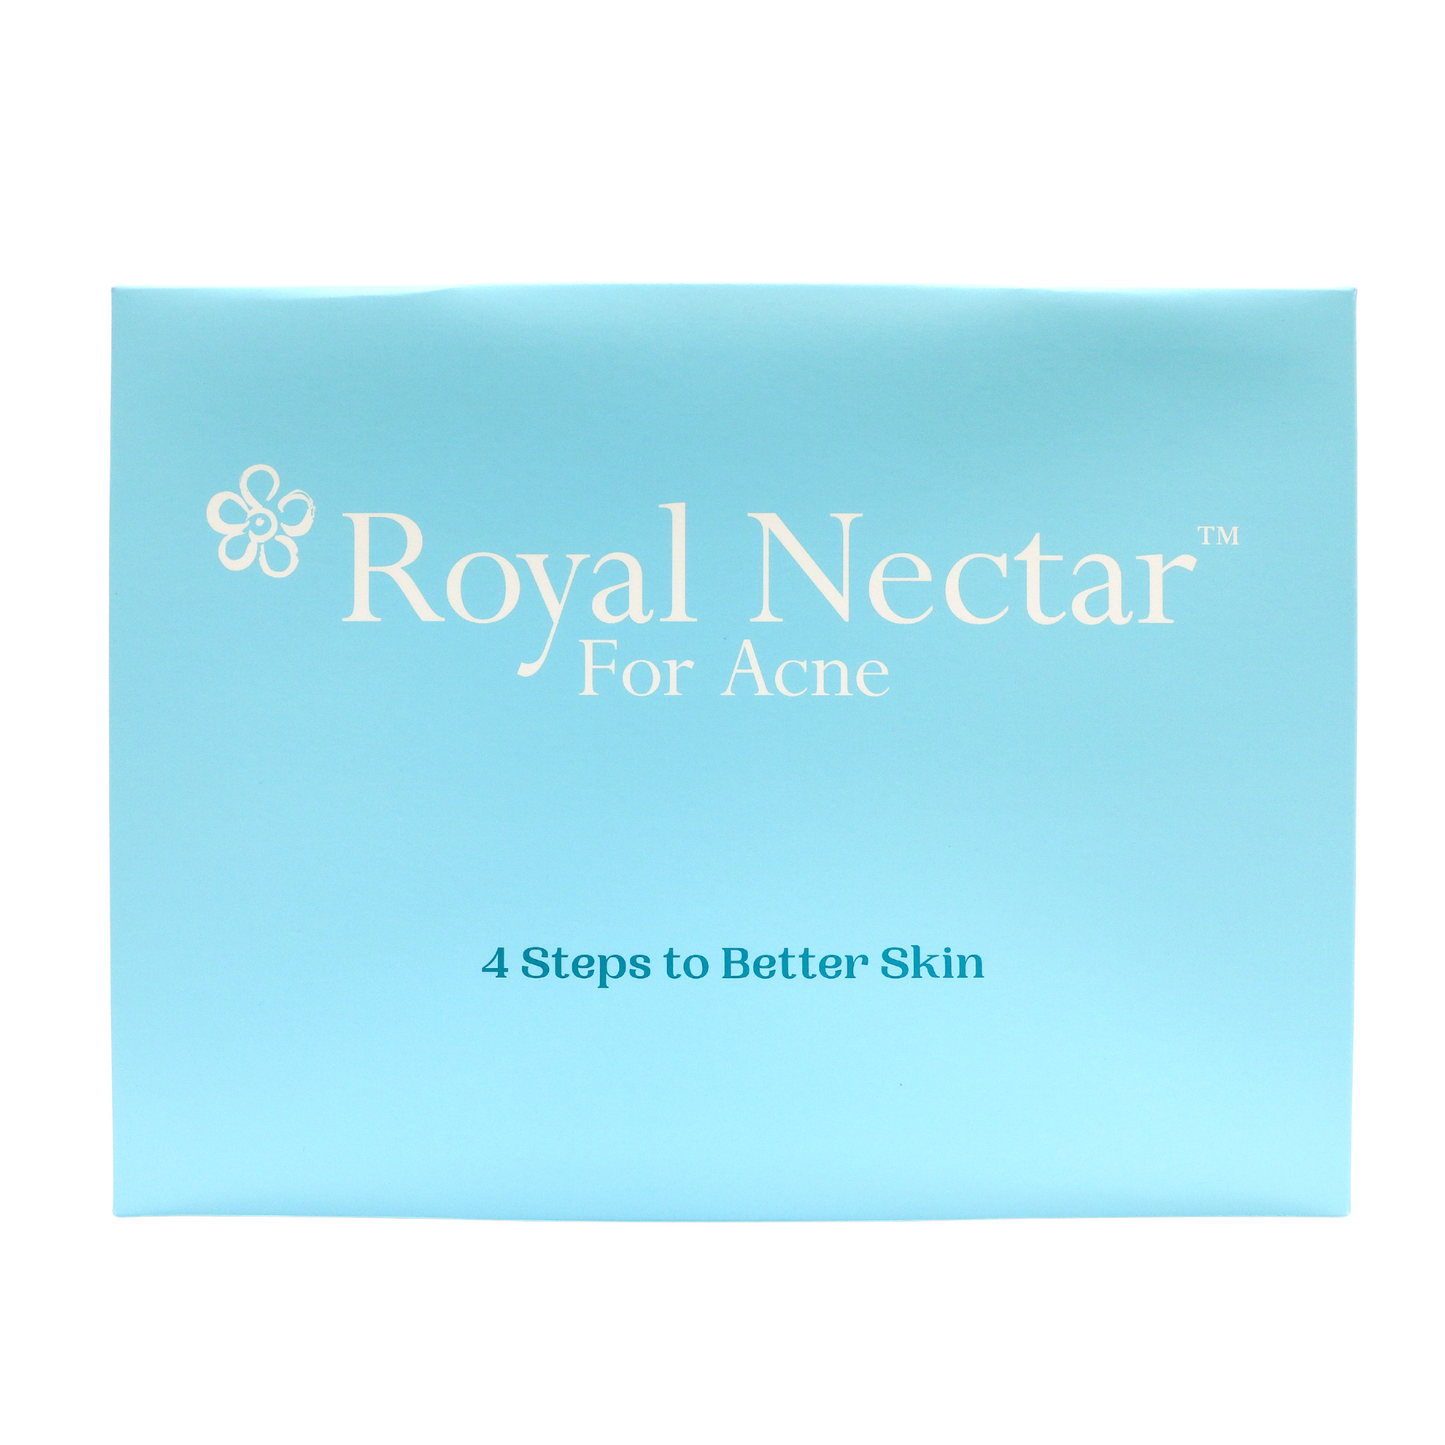 NEW - Royal Nectar Acne Kit